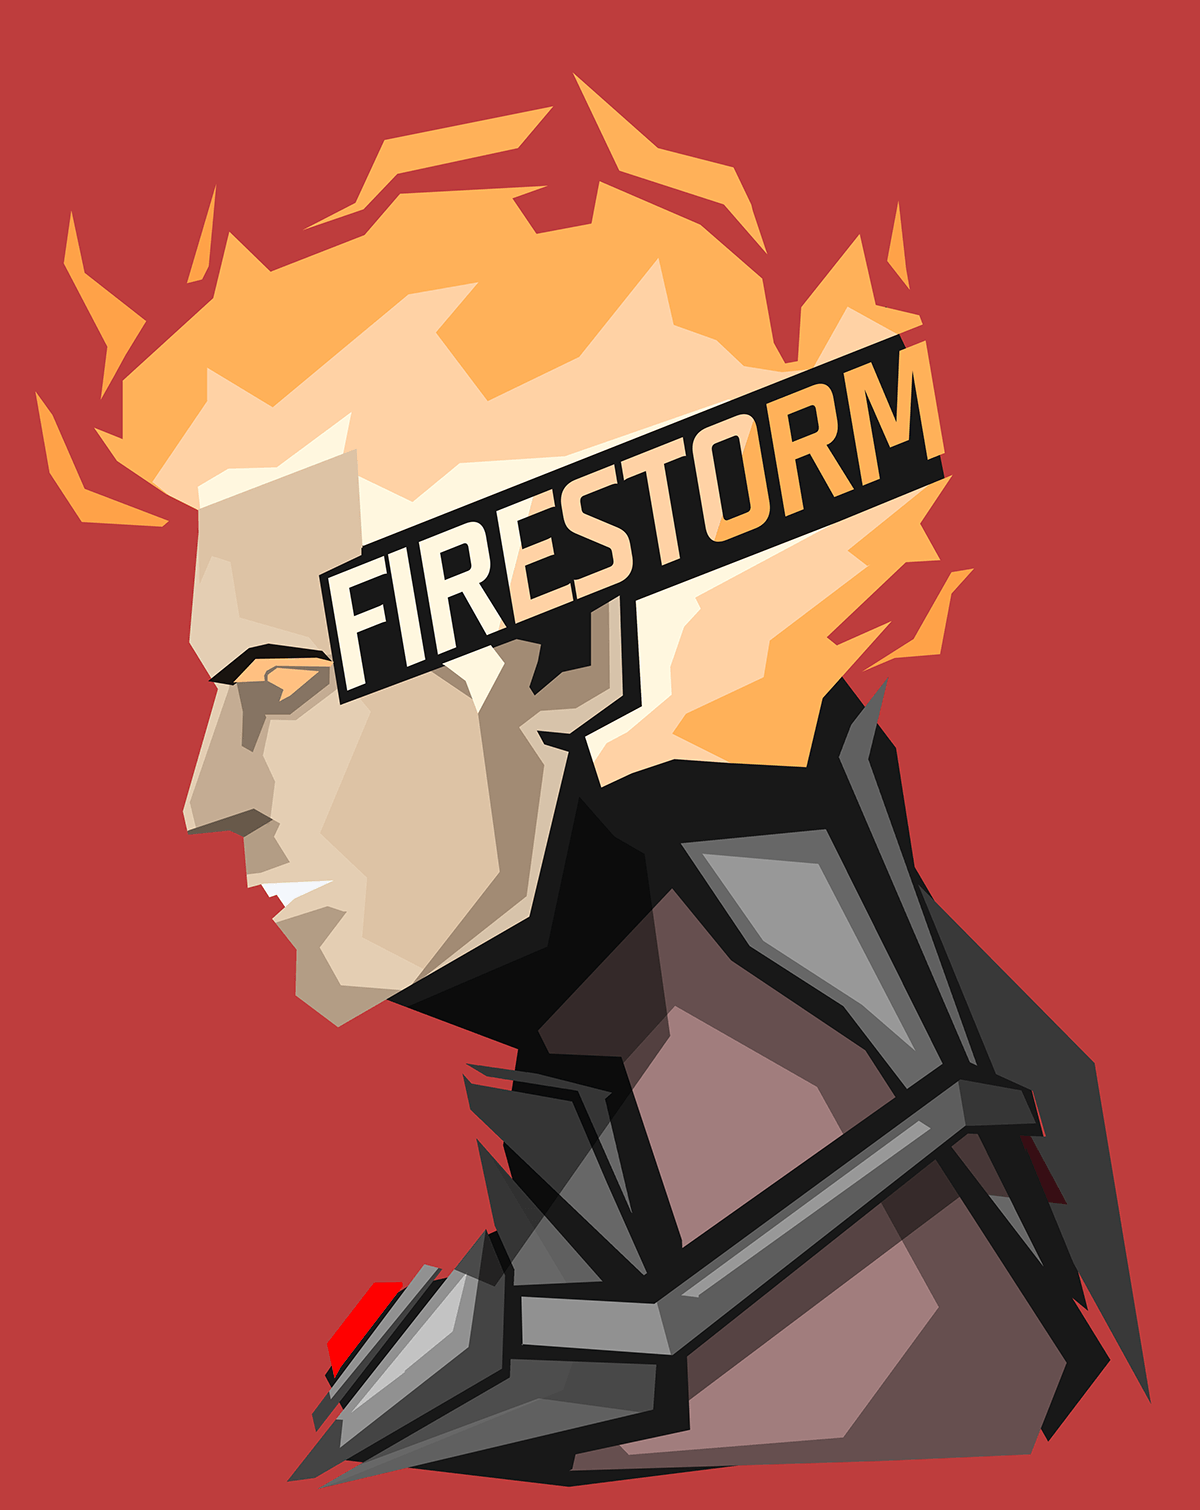 Firestorm, Comics, backgrounds